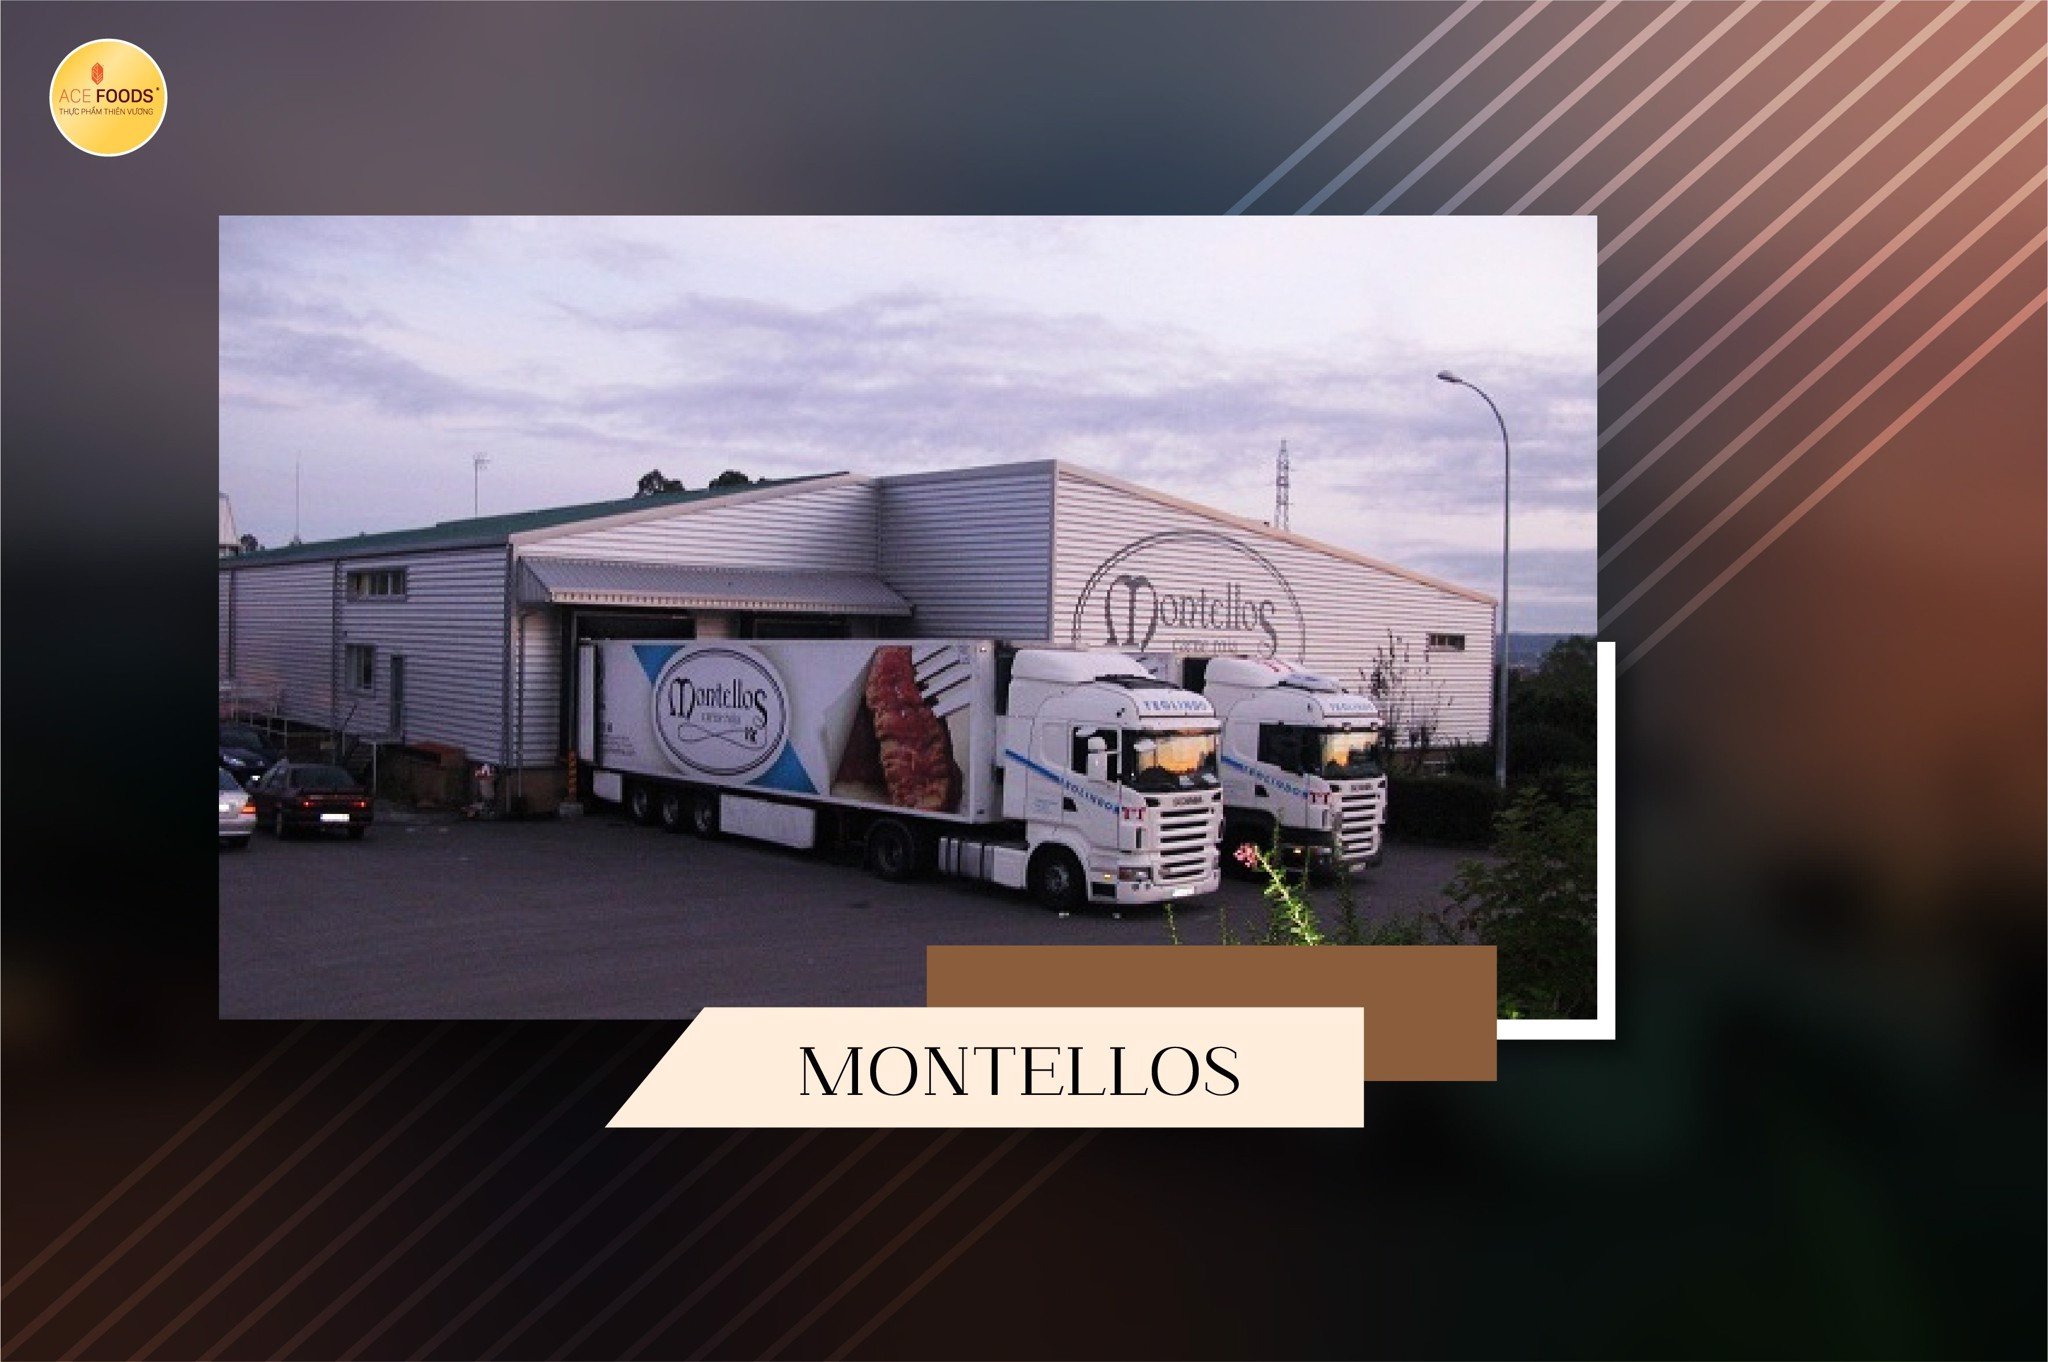 Nhà máy Montellos thuộc công ty Medina - là công ty hàng đầu sản xuất thịt bò